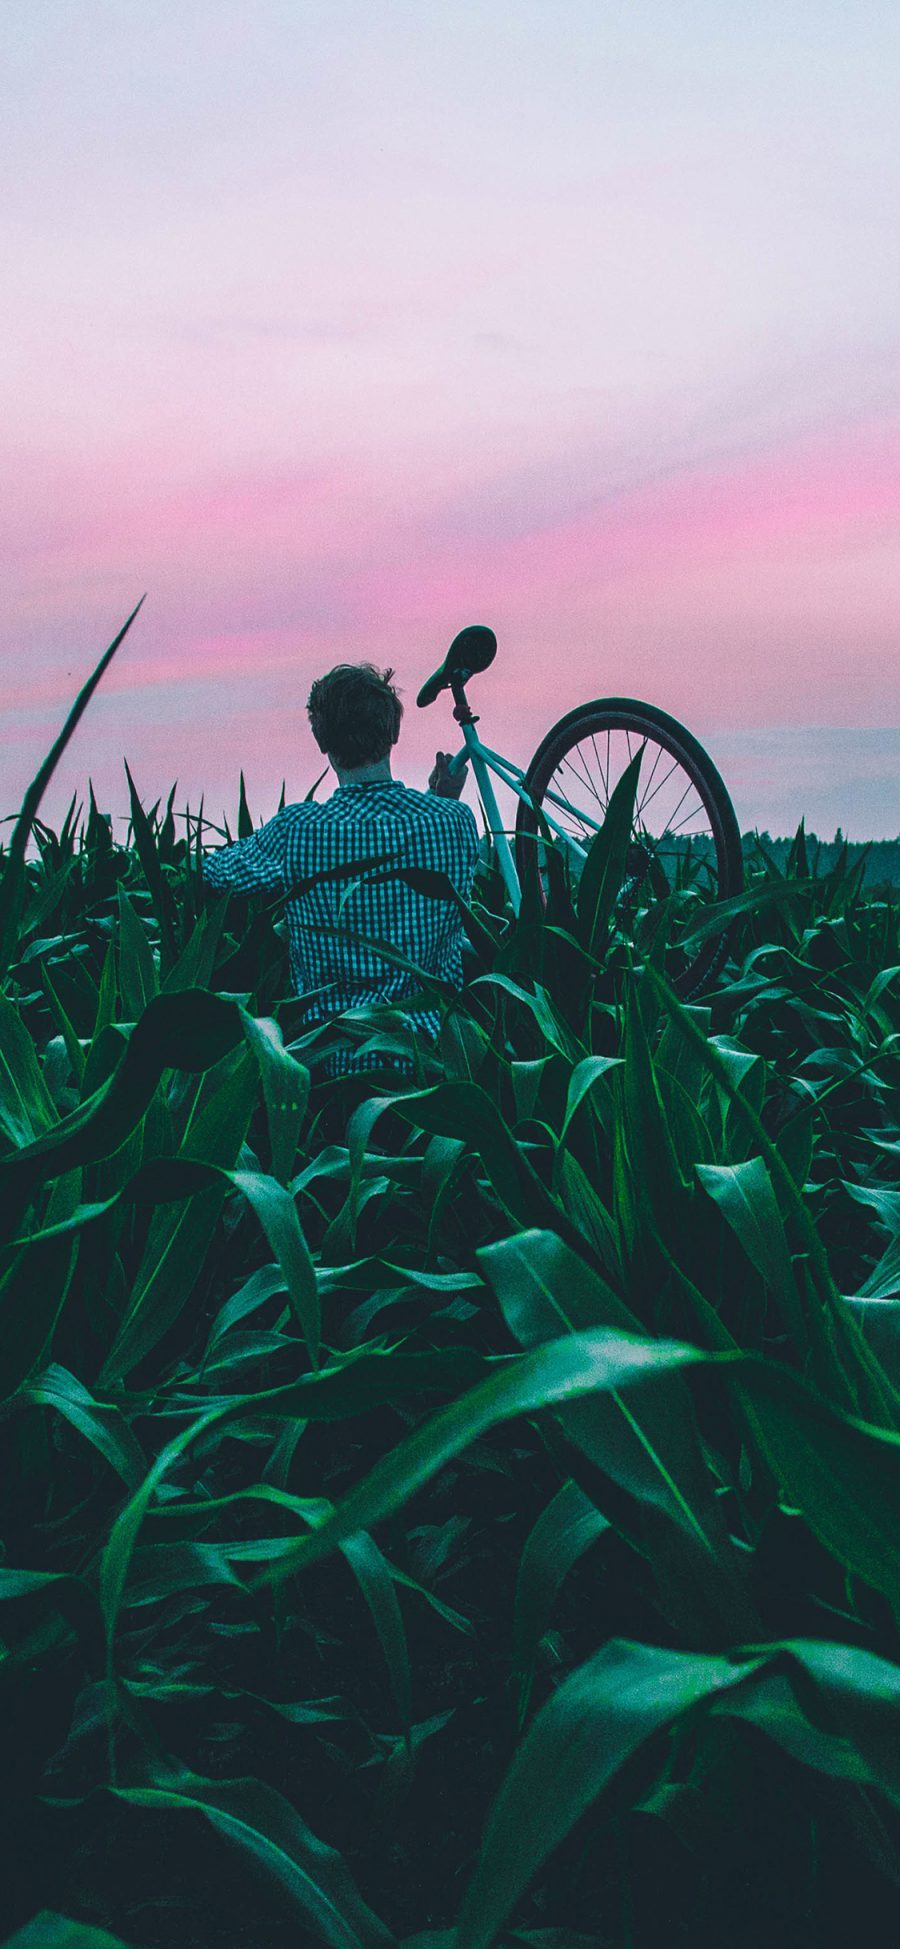 [2436×1125]玉米地 绿色 男孩 单车 自行车 背影 苹果手机壁纸图片